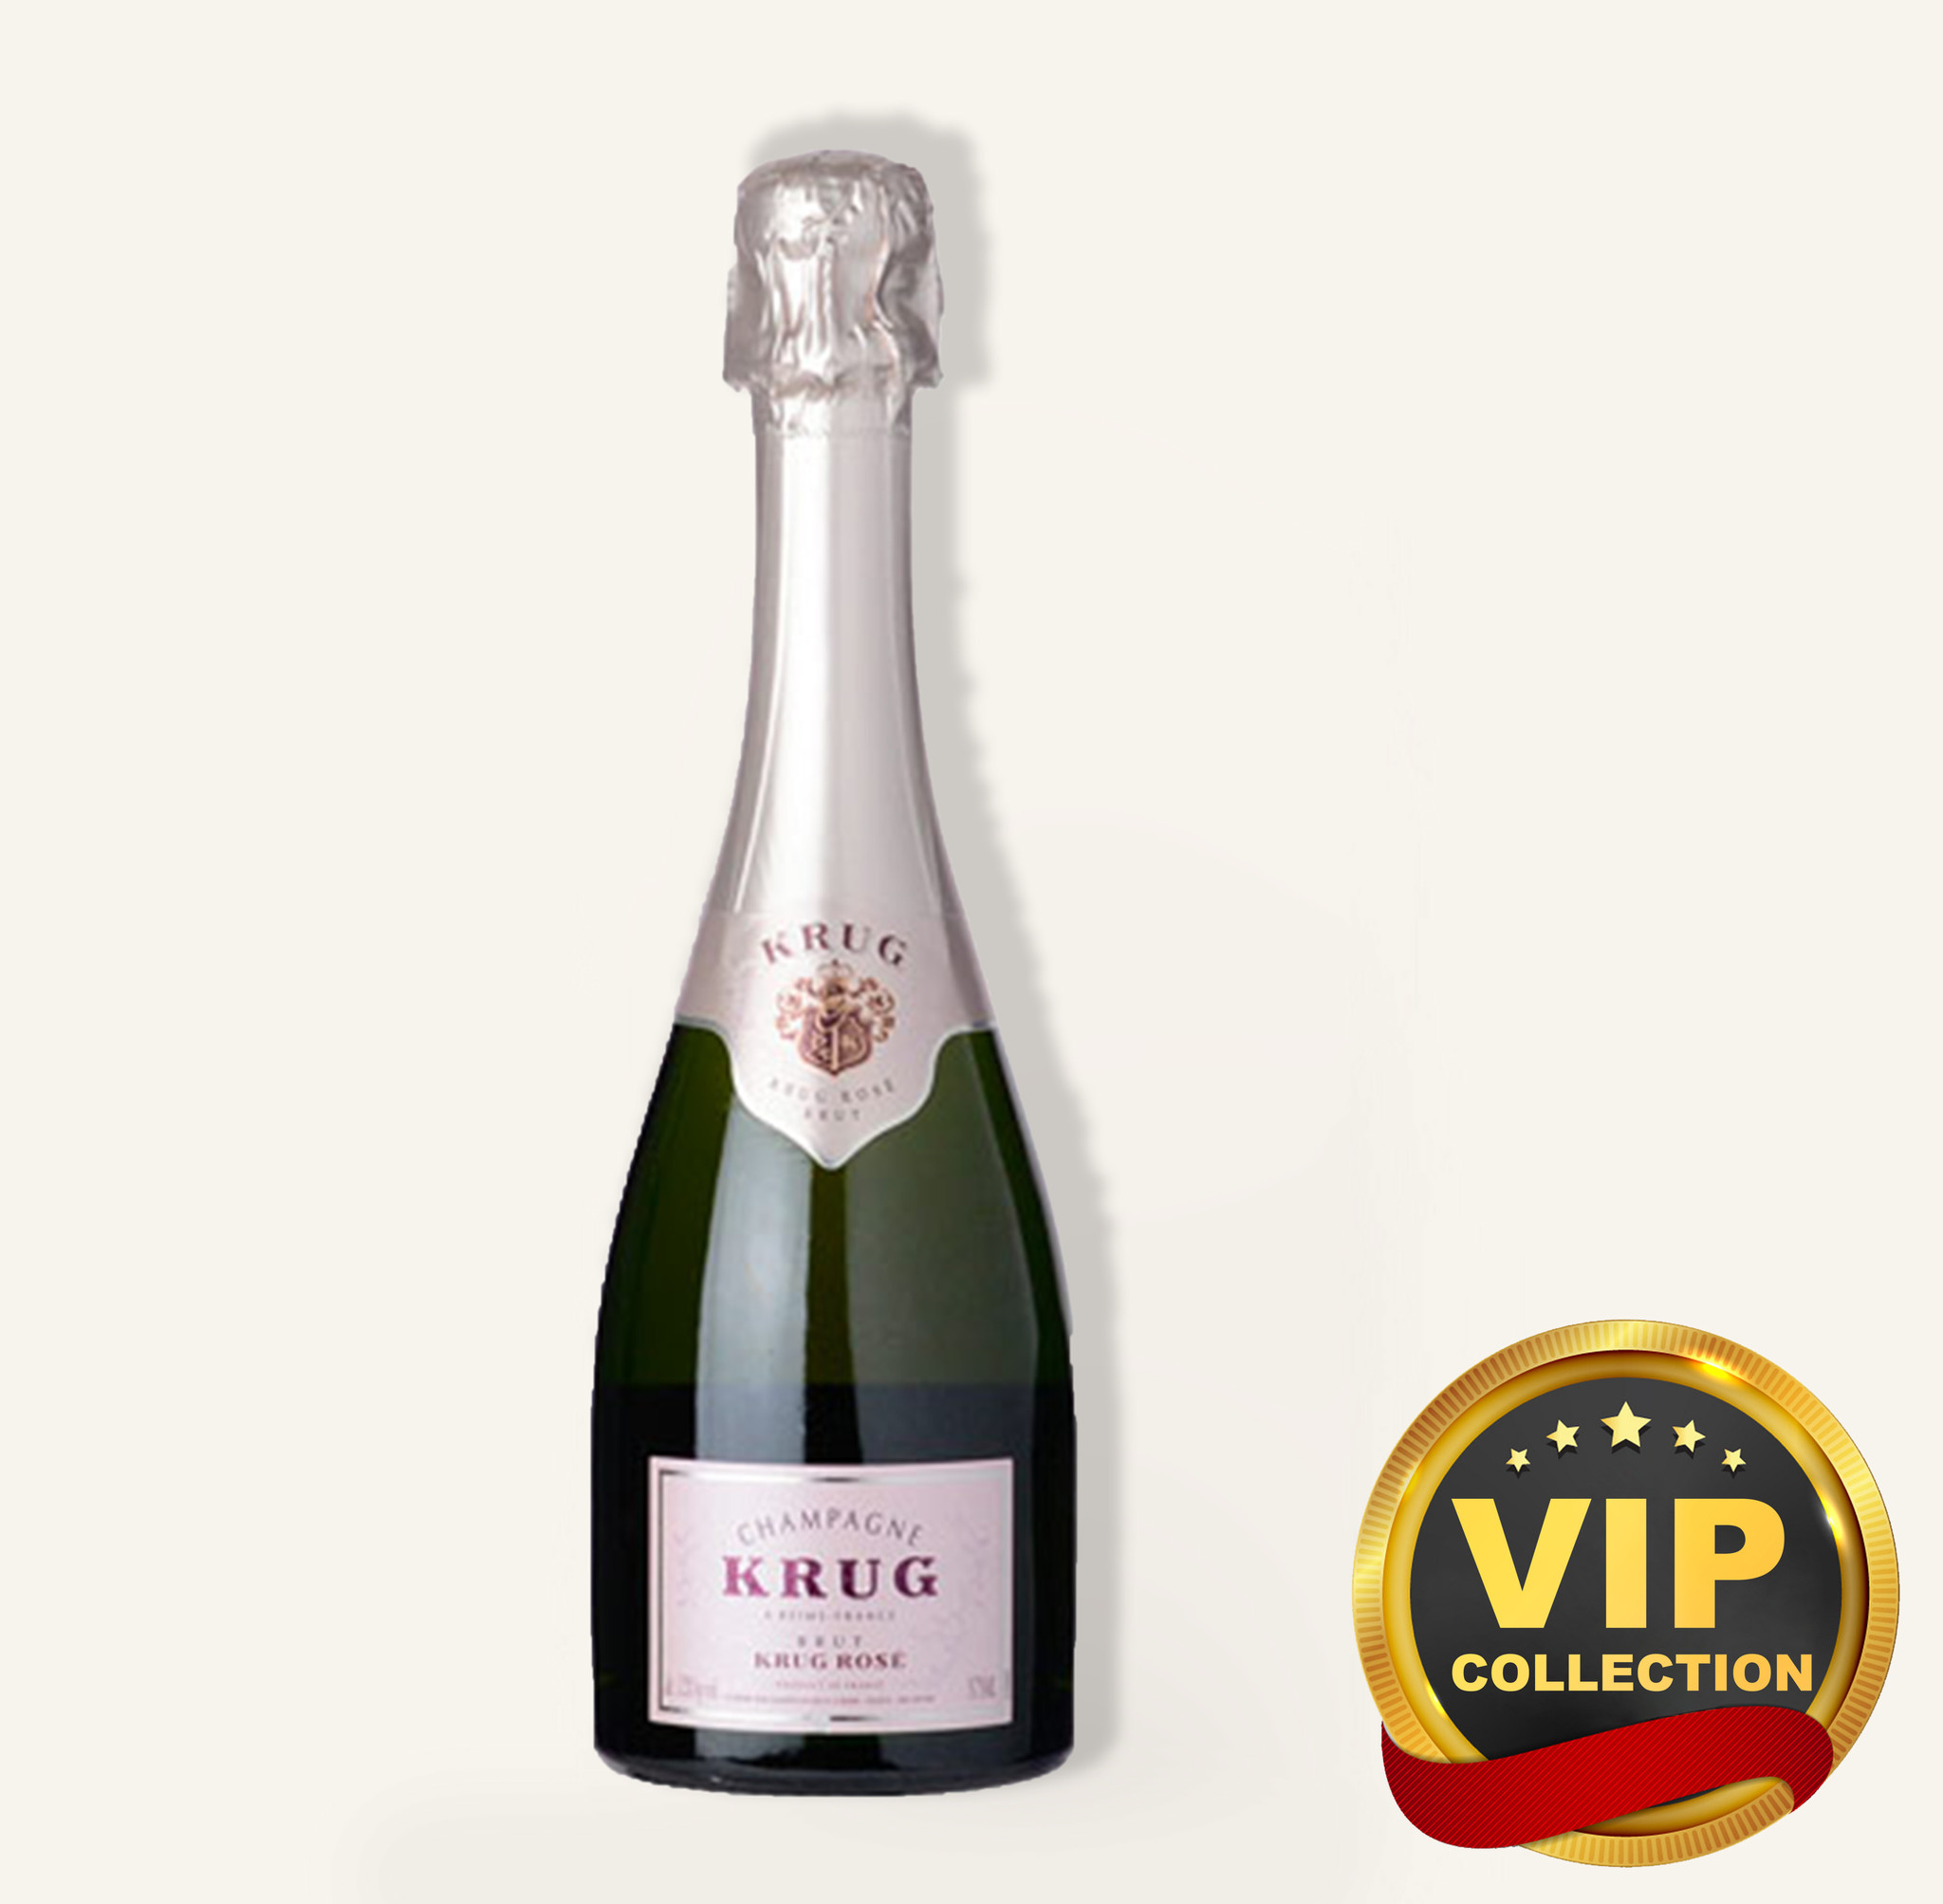 Krug Rose Brut Champagne 375ml Free Delivery